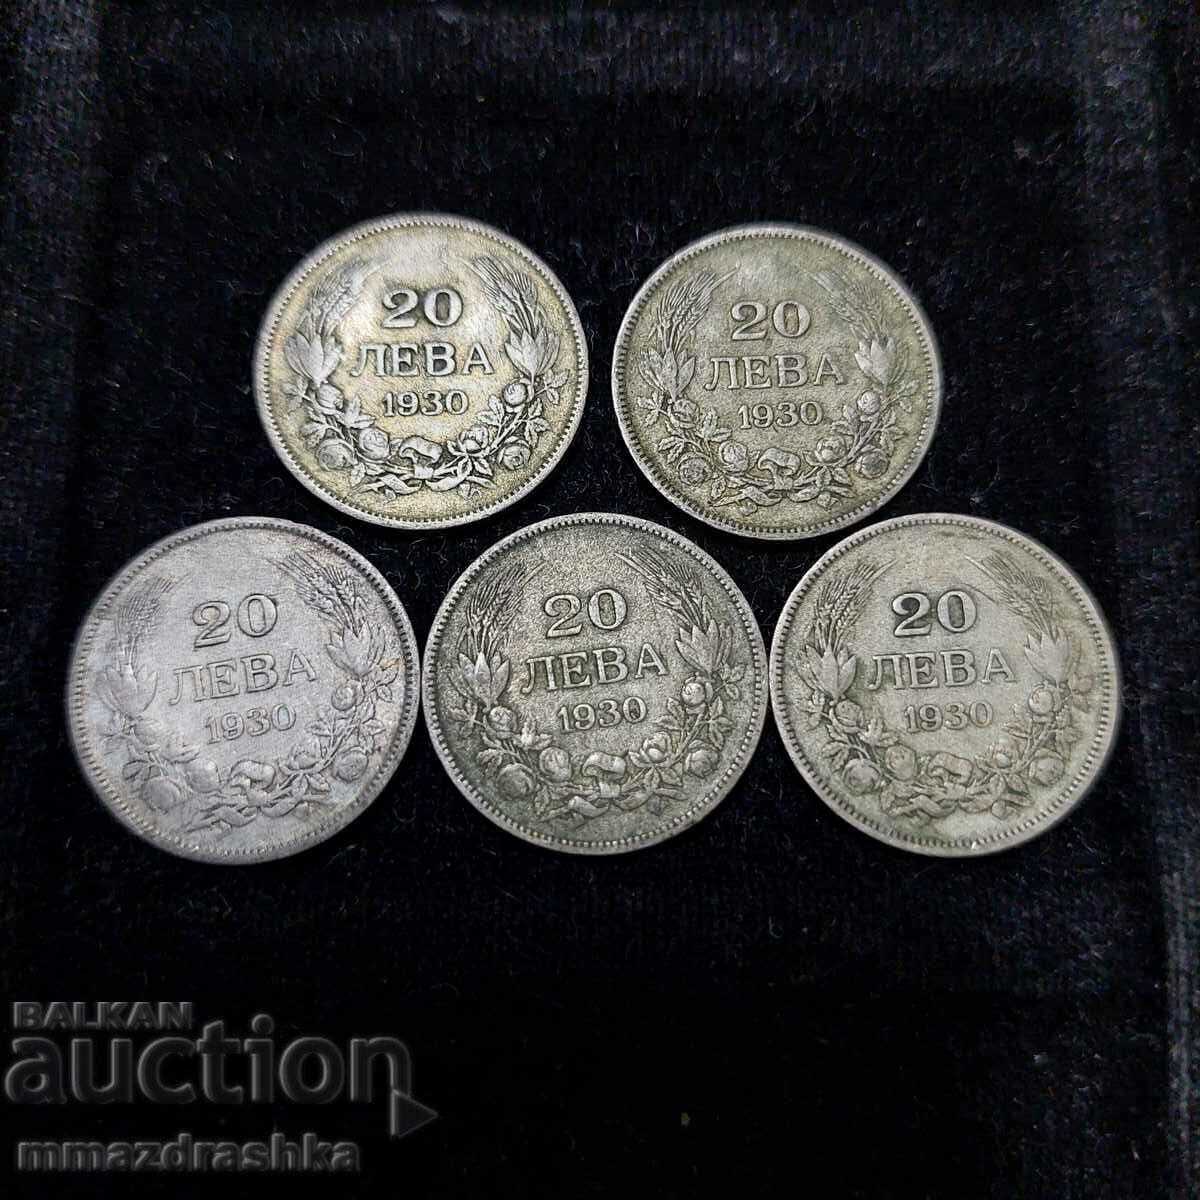 Monede de argint din vremurile regale